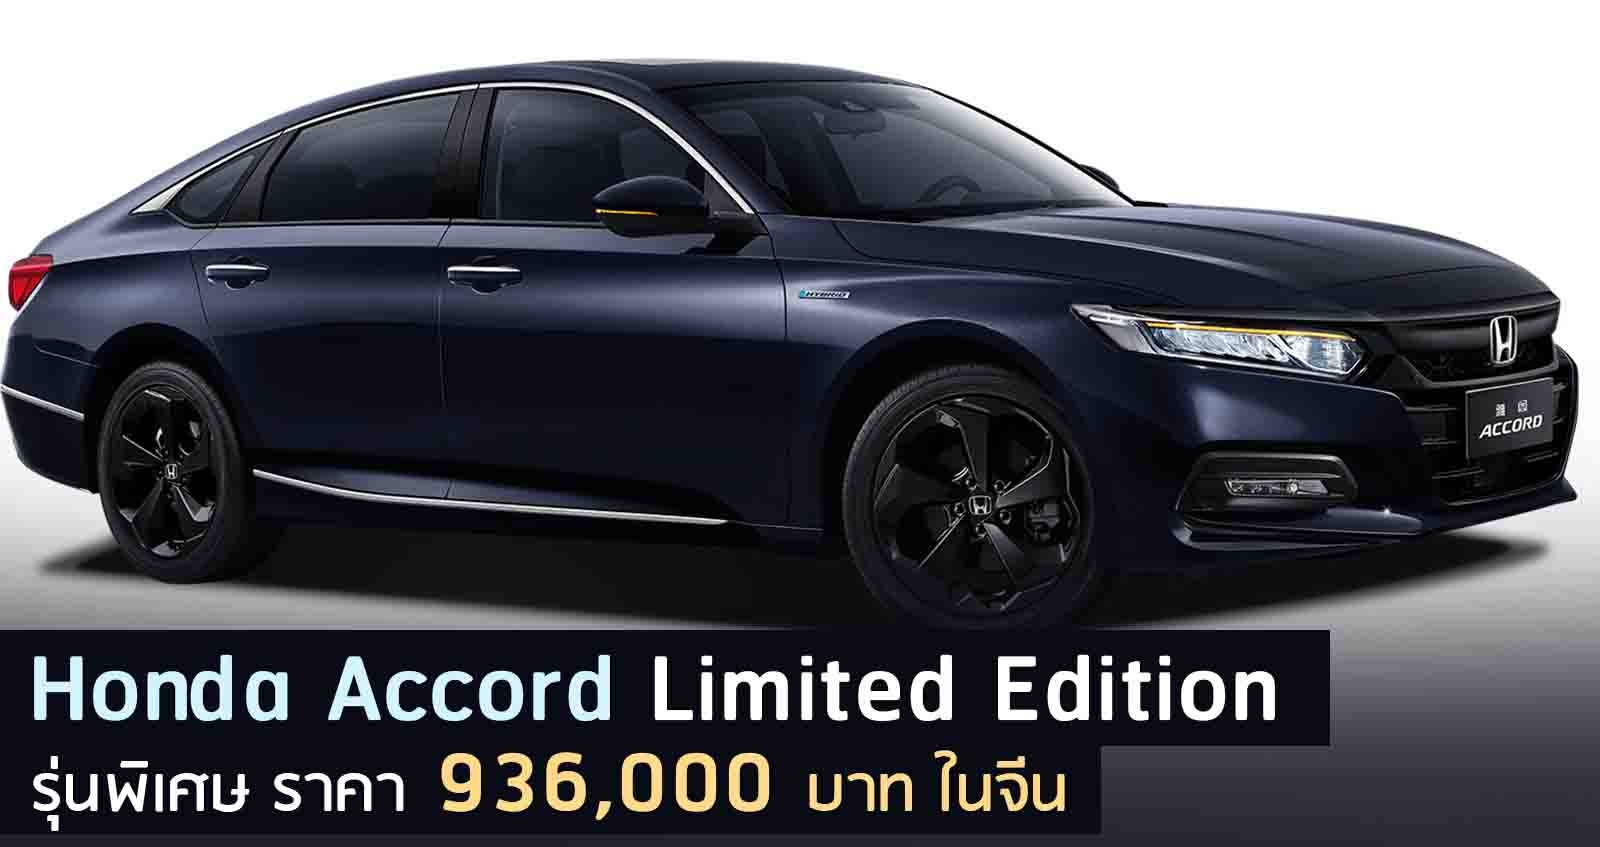 Honda Accord Limited Edition รุ่นพิเศษ ราคา 936,000 บาท ในจีน